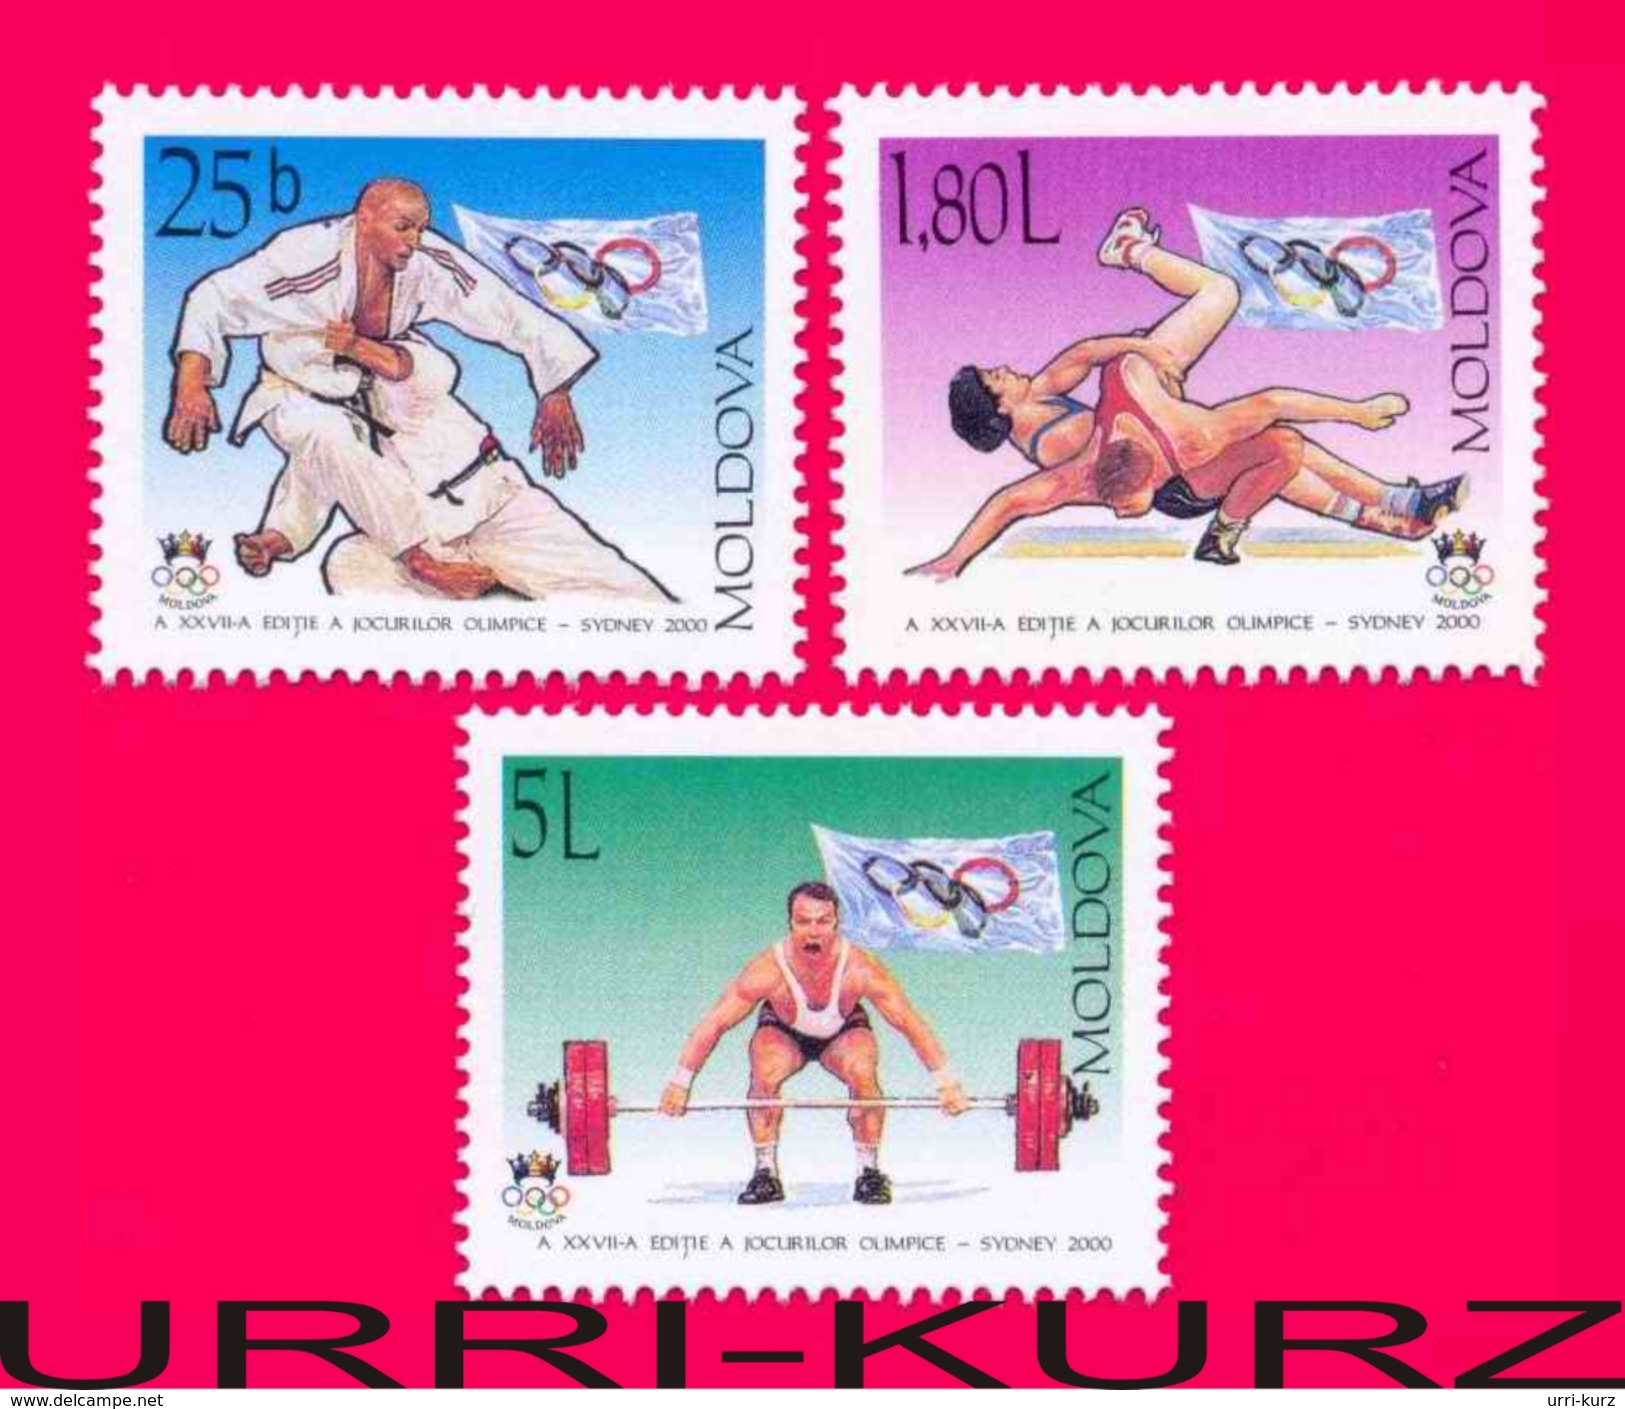 MOLDOVA 2000 Sports XXVII Summer Olympics Olympic Games Sydney Australia Judo Wrestling Weightlifting 3v Mi370-372 MNH - Ete 2000: Sydney